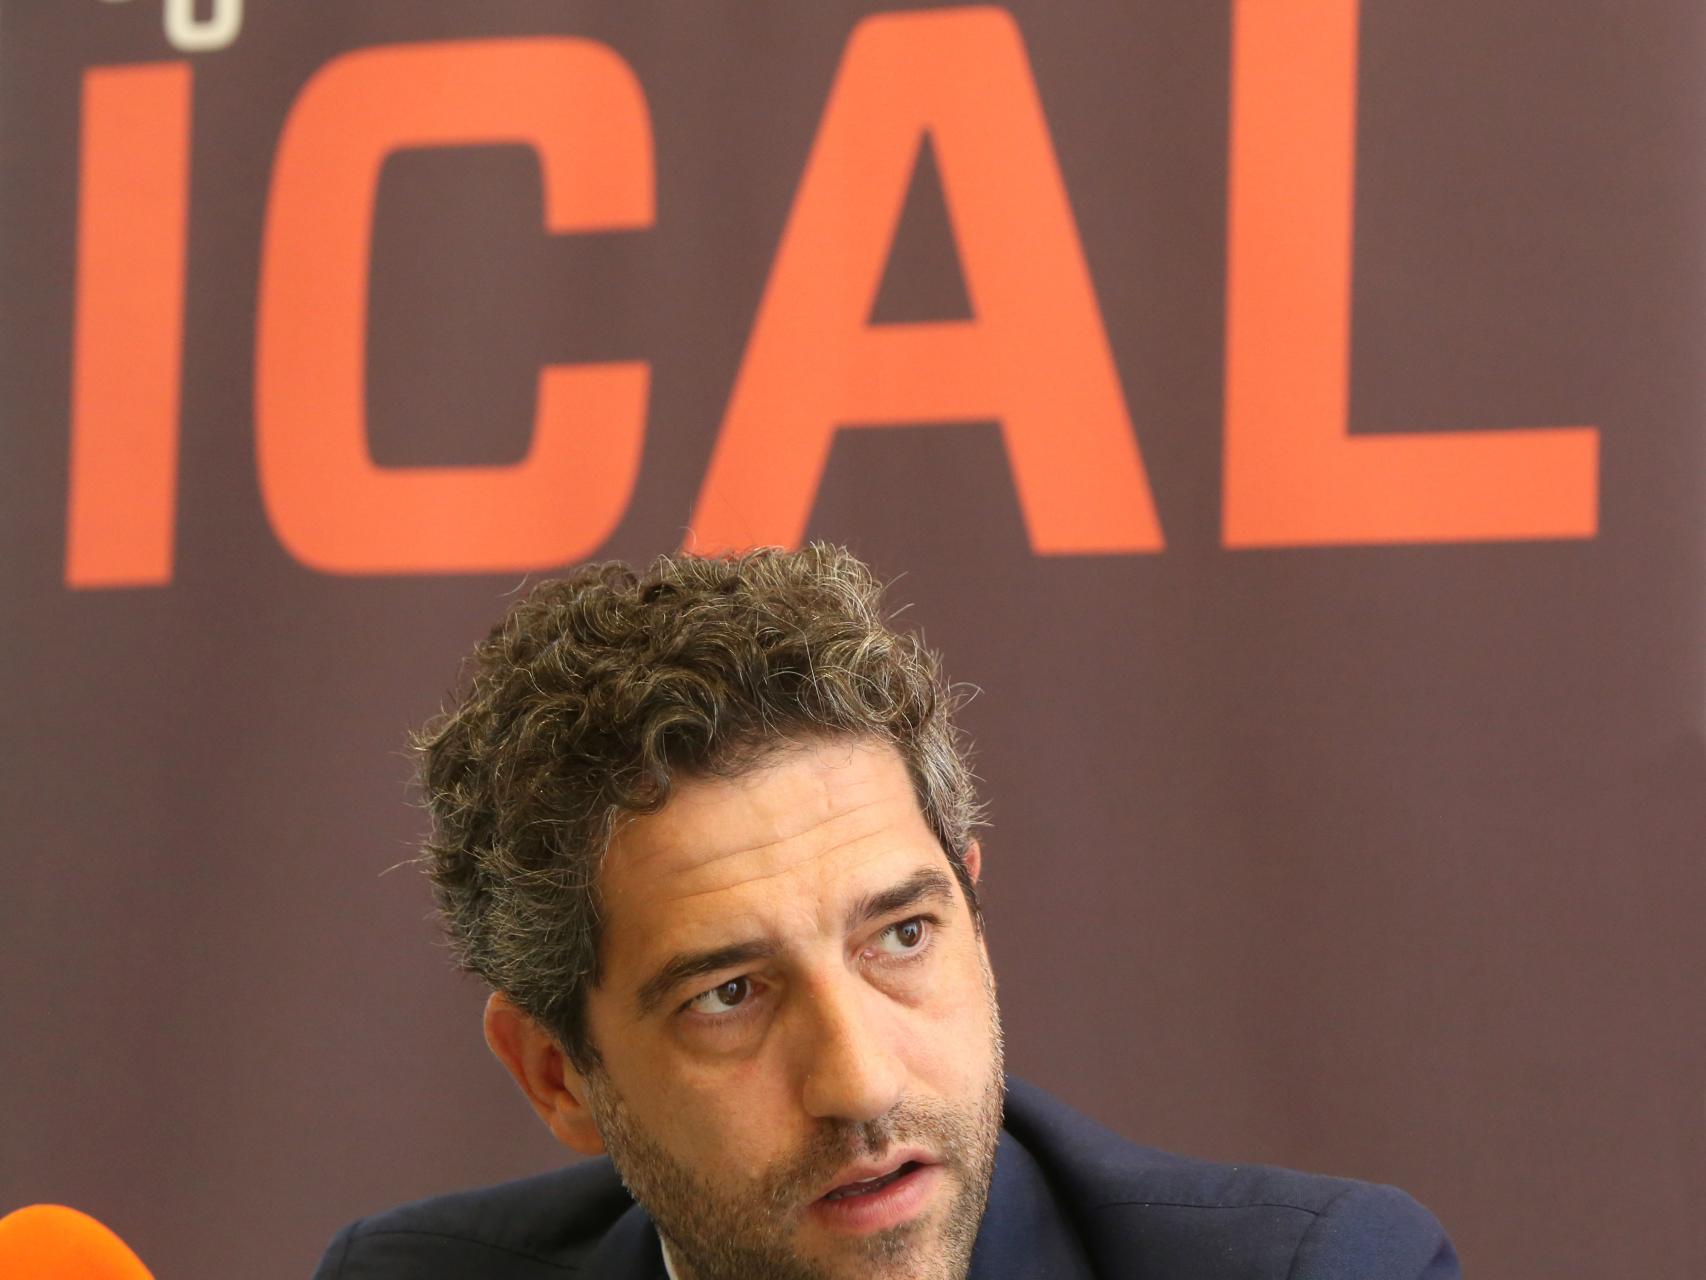 César Pontvianne, presidente de Iberaval. Fotografía: Rubén Cacho / ICAL